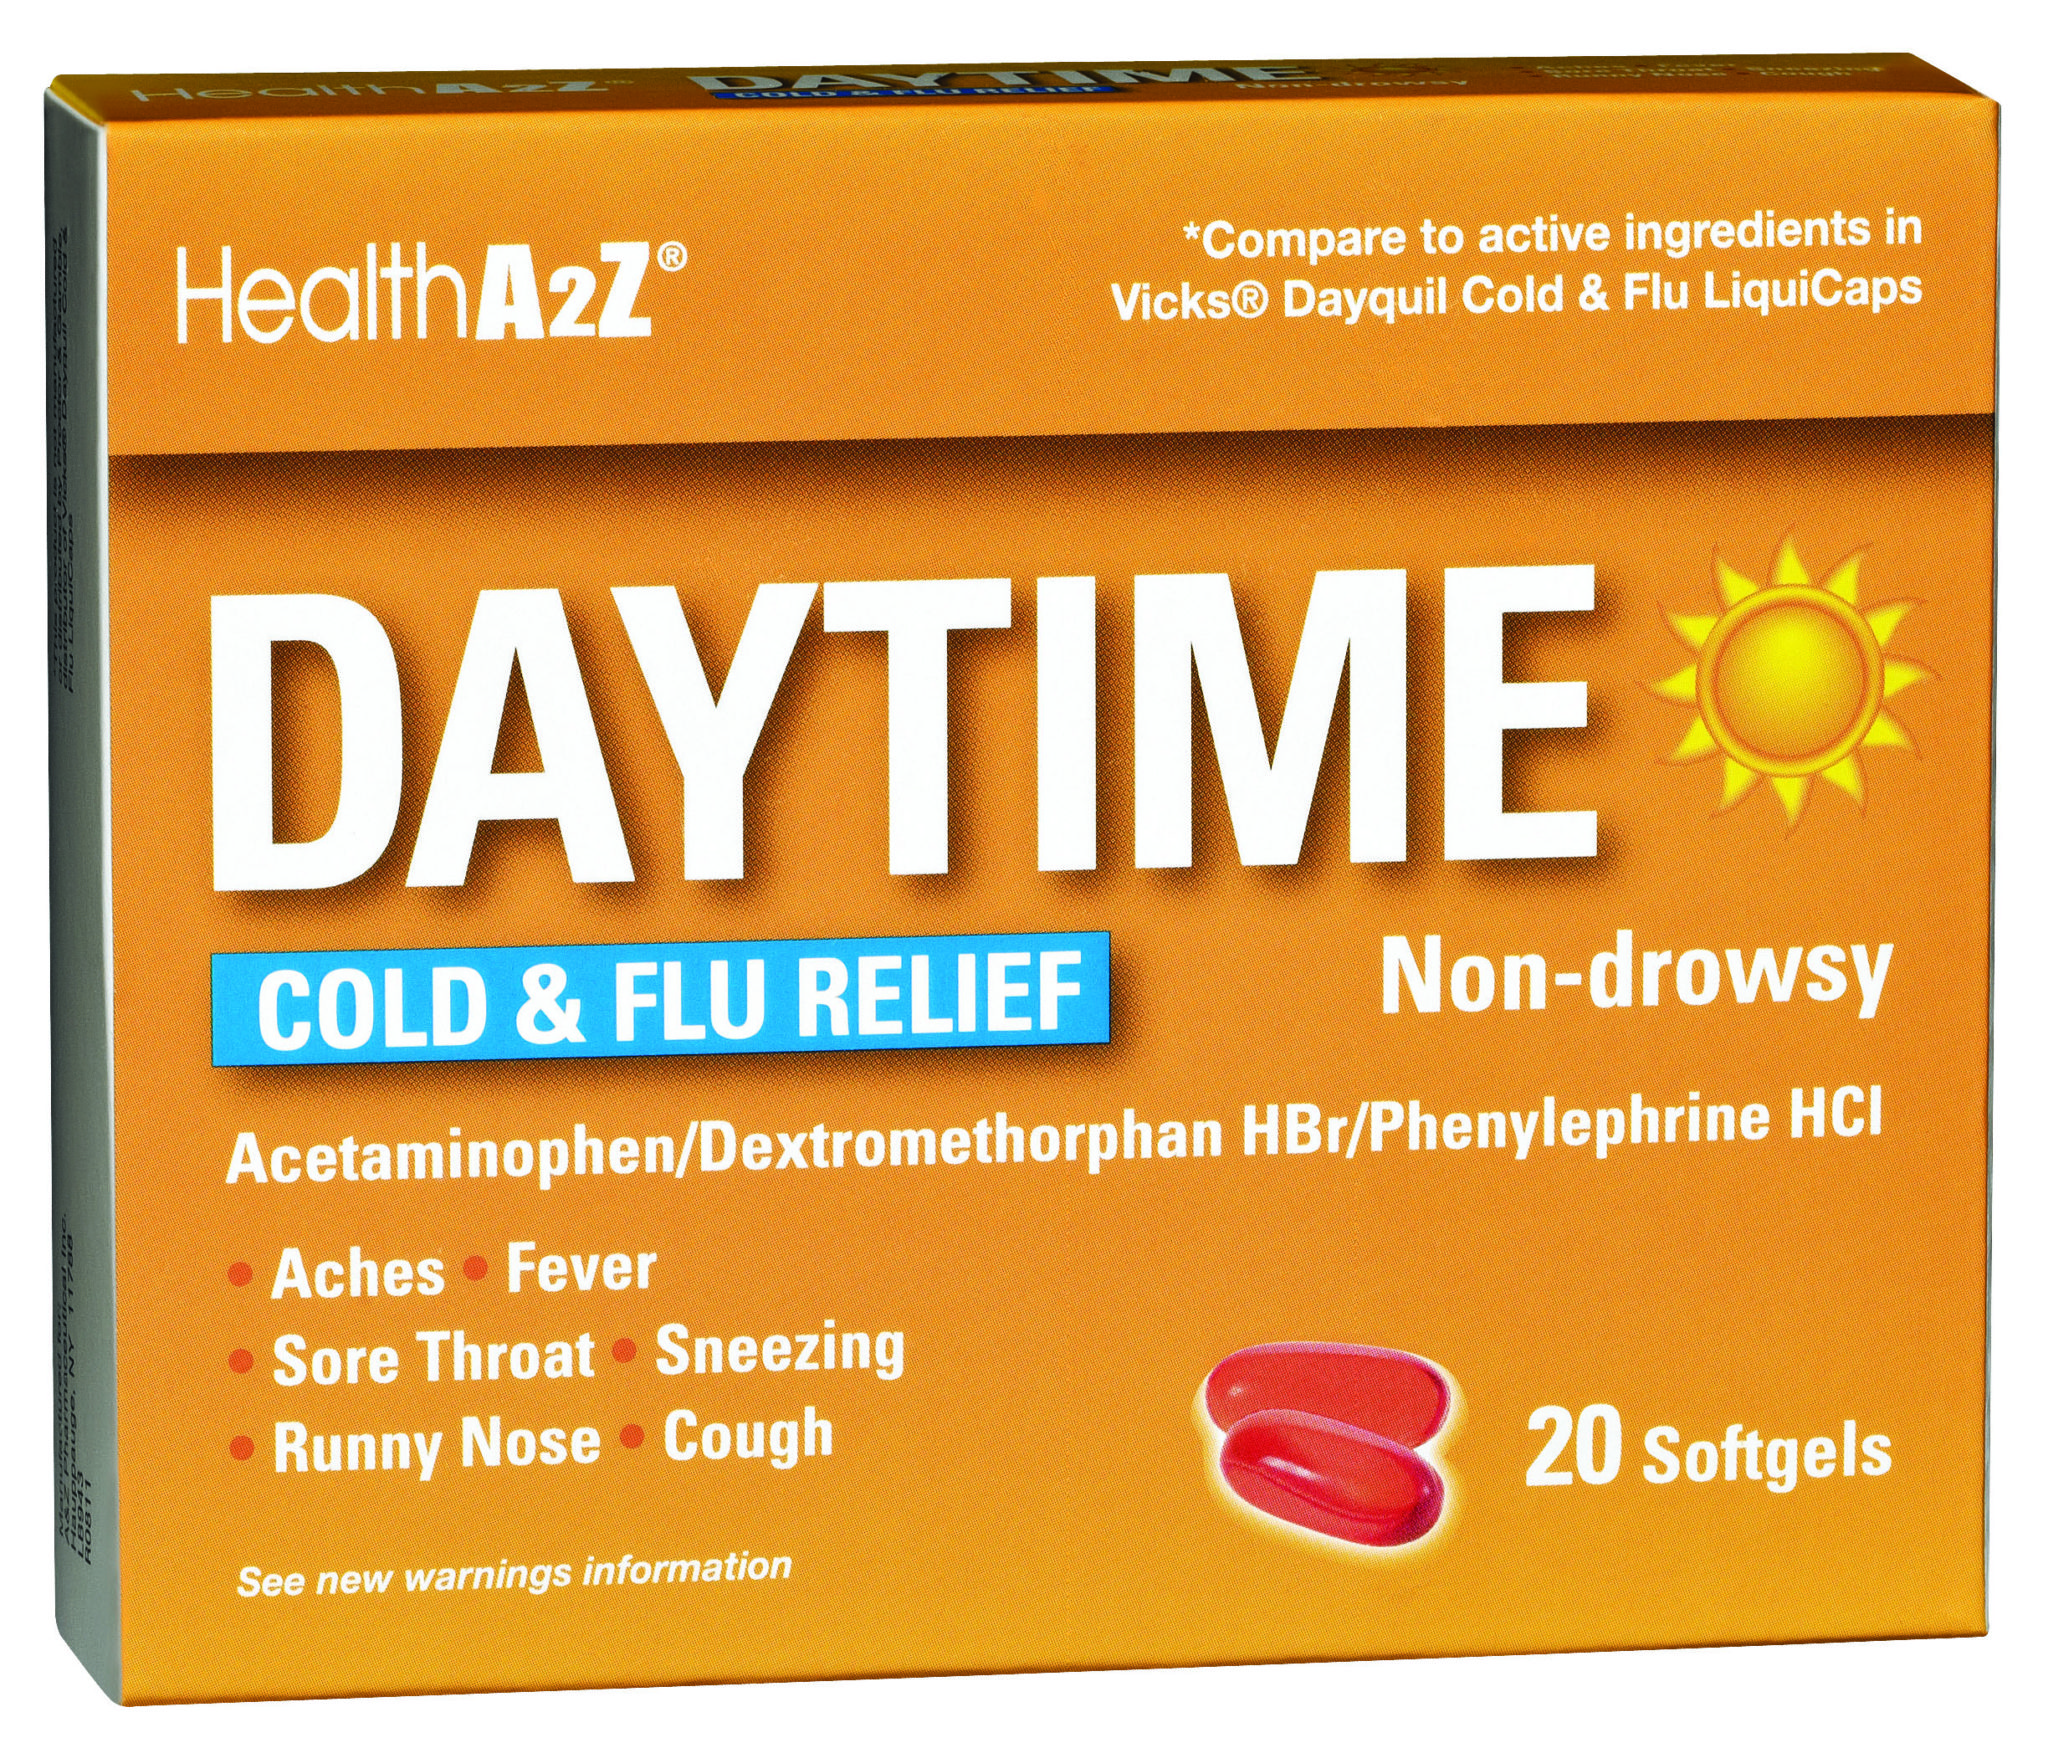 HealthA2Z® Daytime Cold & Flu Relief